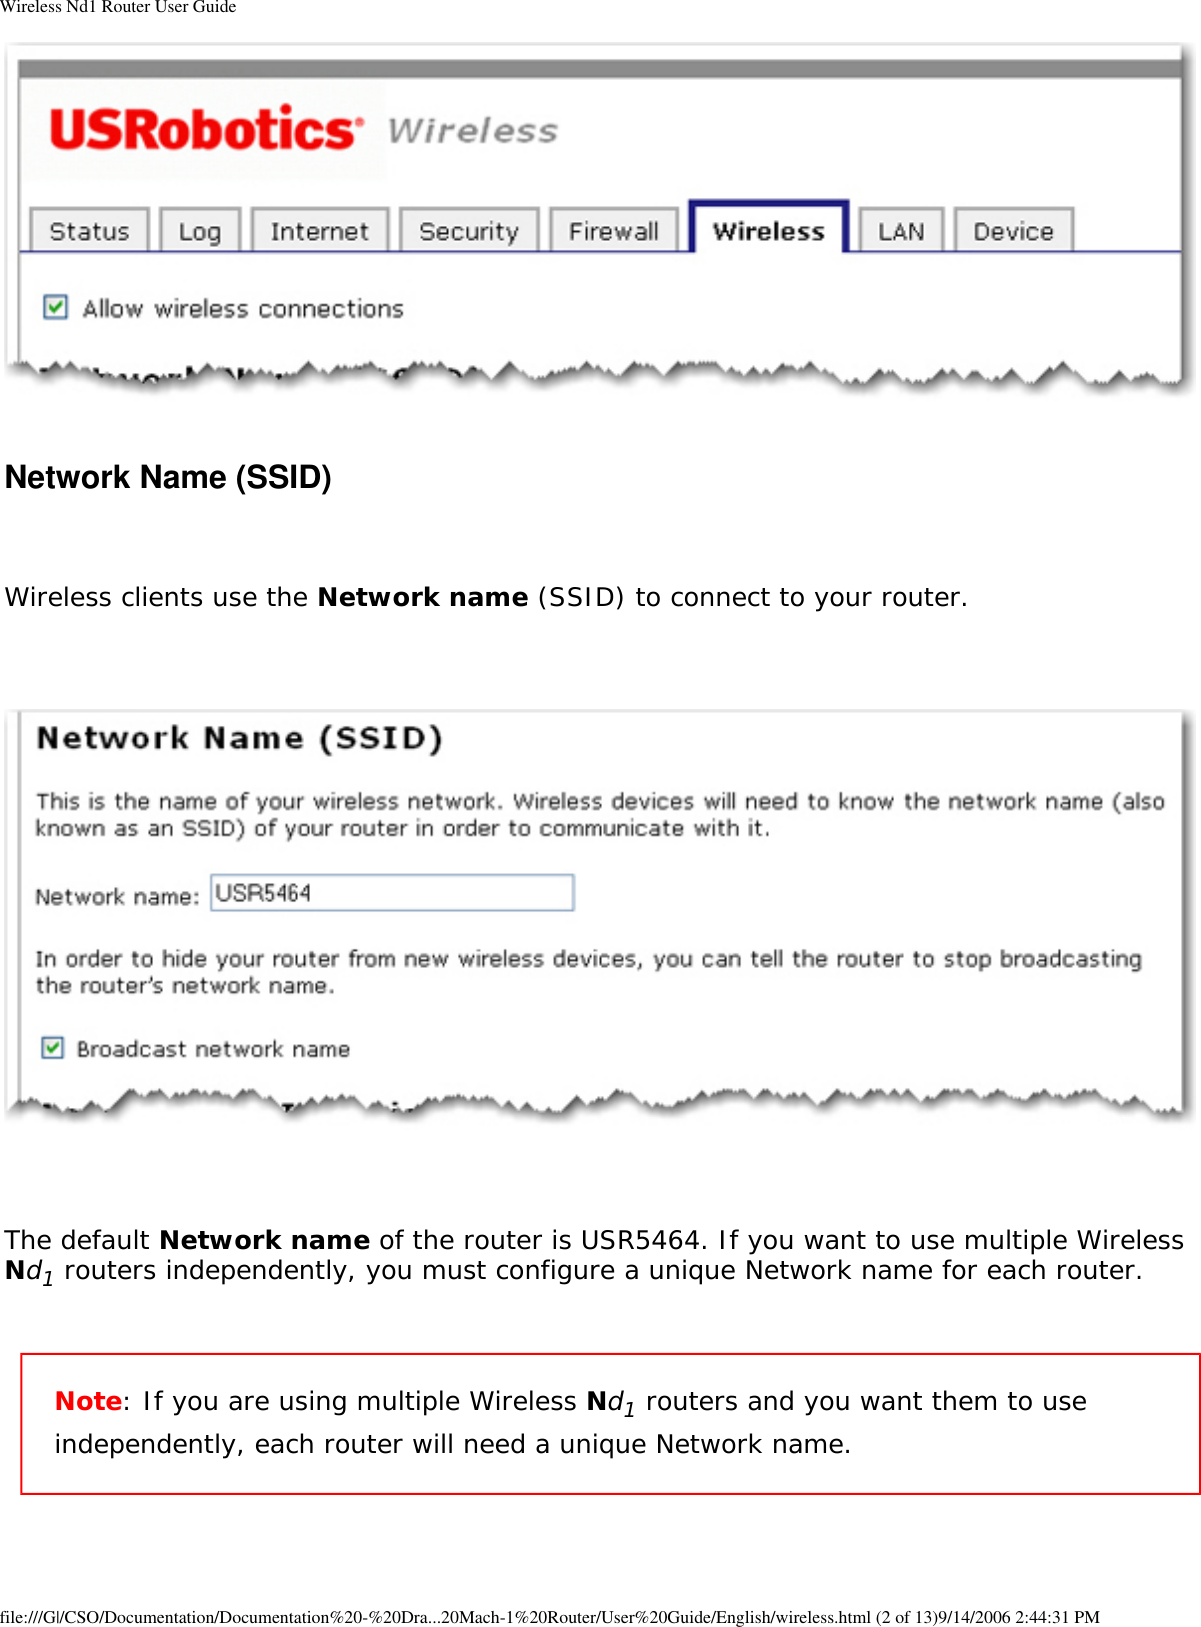 Page 31 of GemTek Technology R950630GN USRobotics Wireless Nd1 Router User Manual Wireless Nd1 Router User Guide